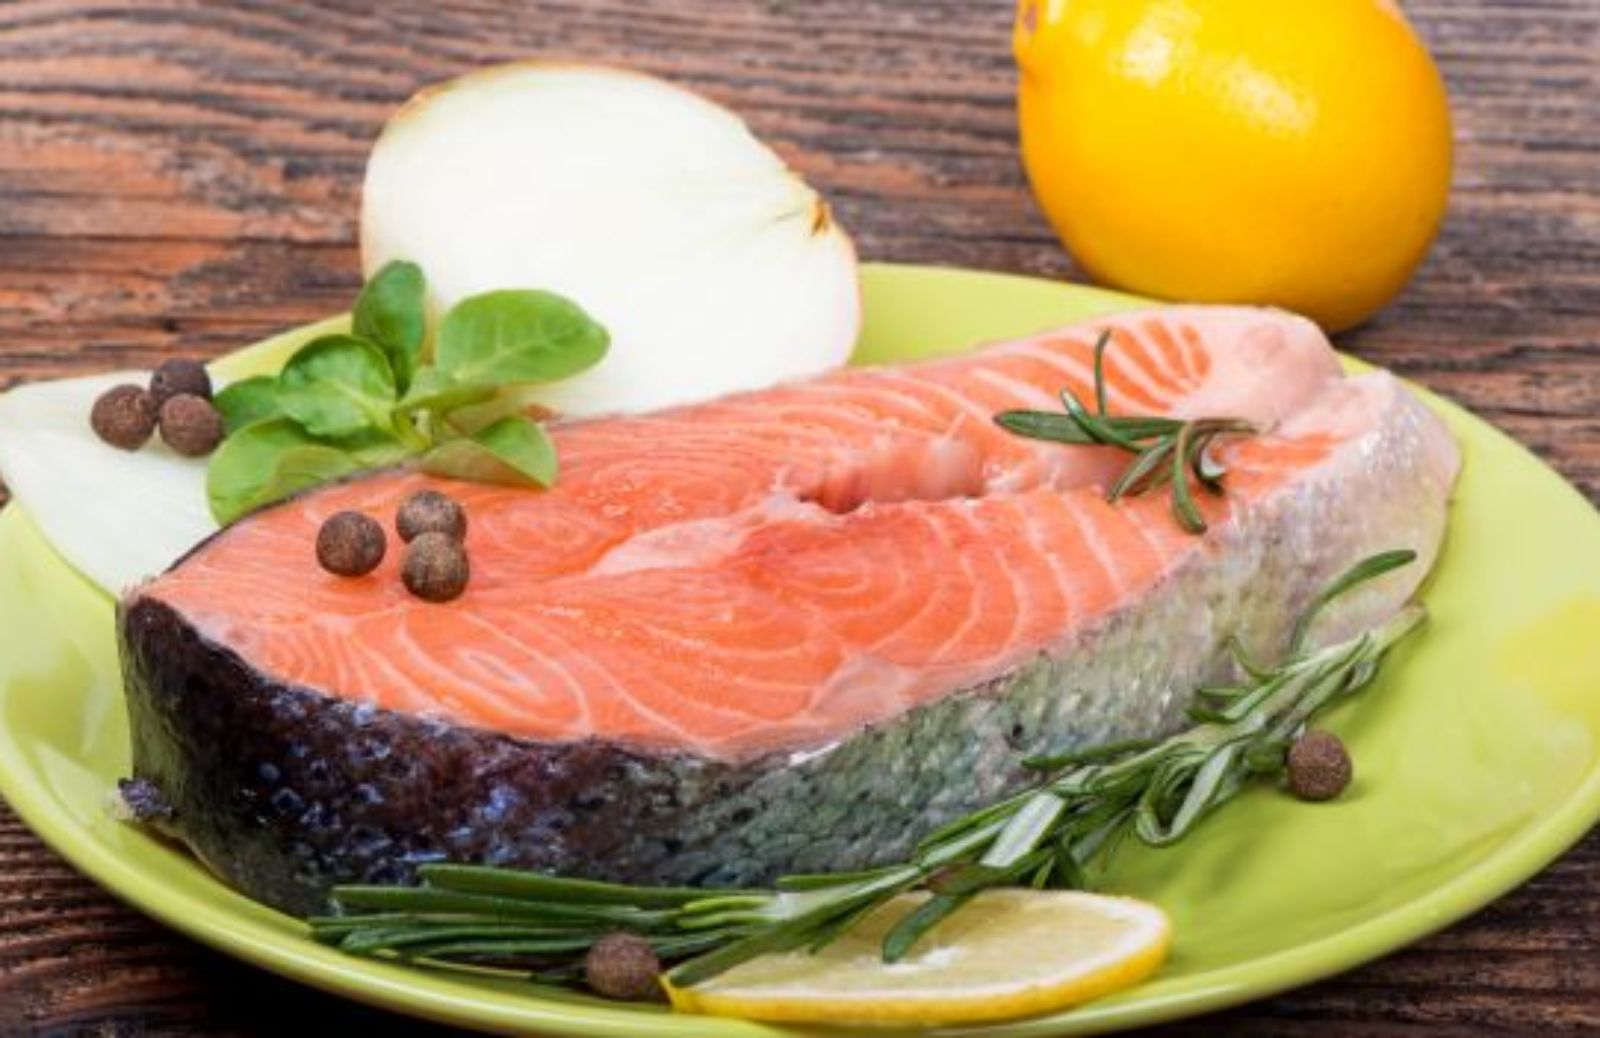 Come dimagrire in modo salutare con la nuova dieta nordica